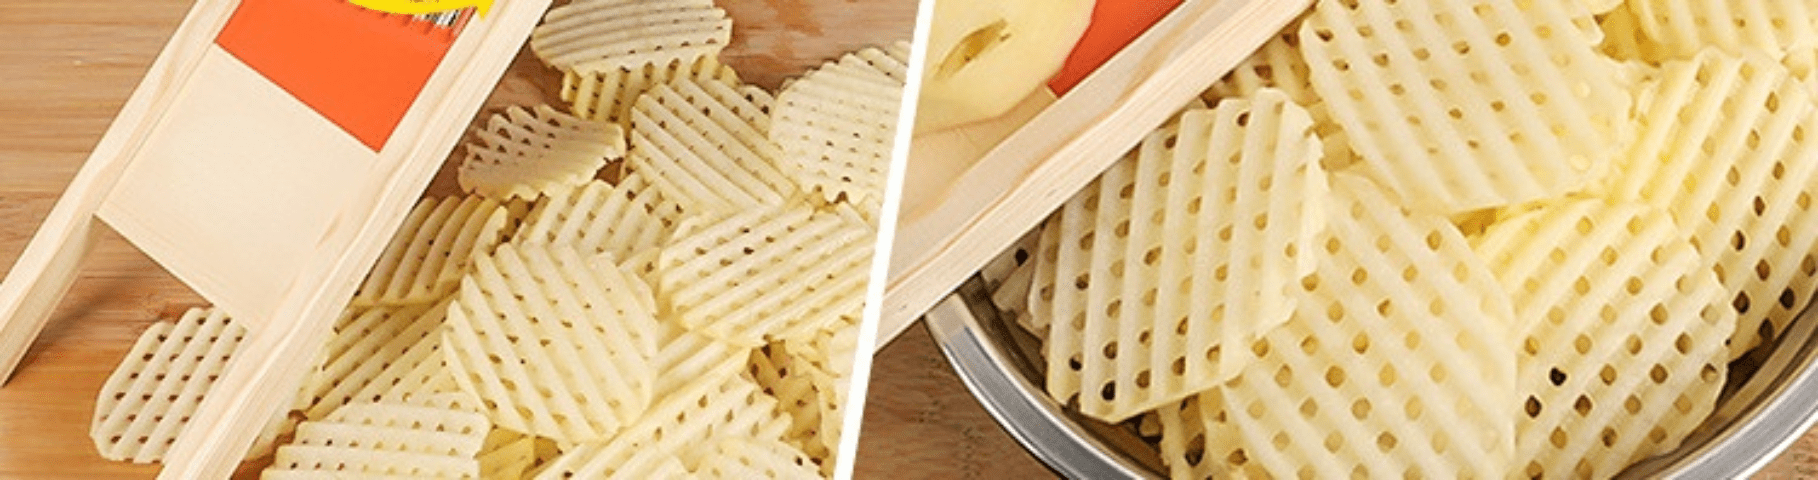 🥔 ¿Cómo usar el cortador de patatas rejilla? 🥔